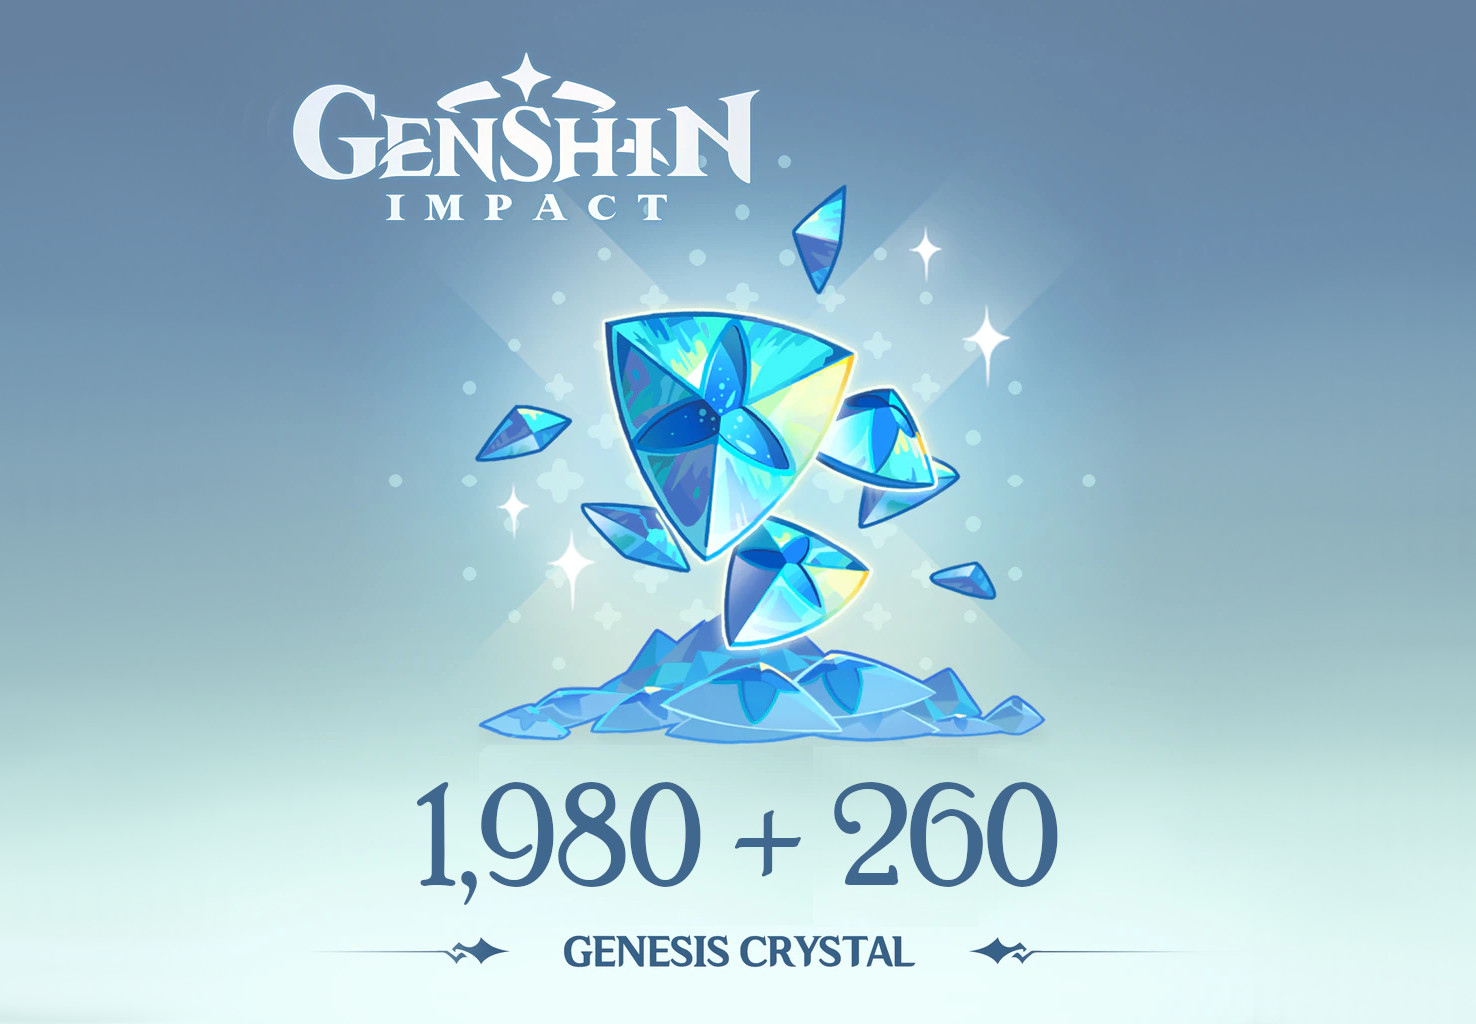 Genshin Impact - 1,980 + 260 Genesis Crystals Reidos Voucher [USD 33.9]